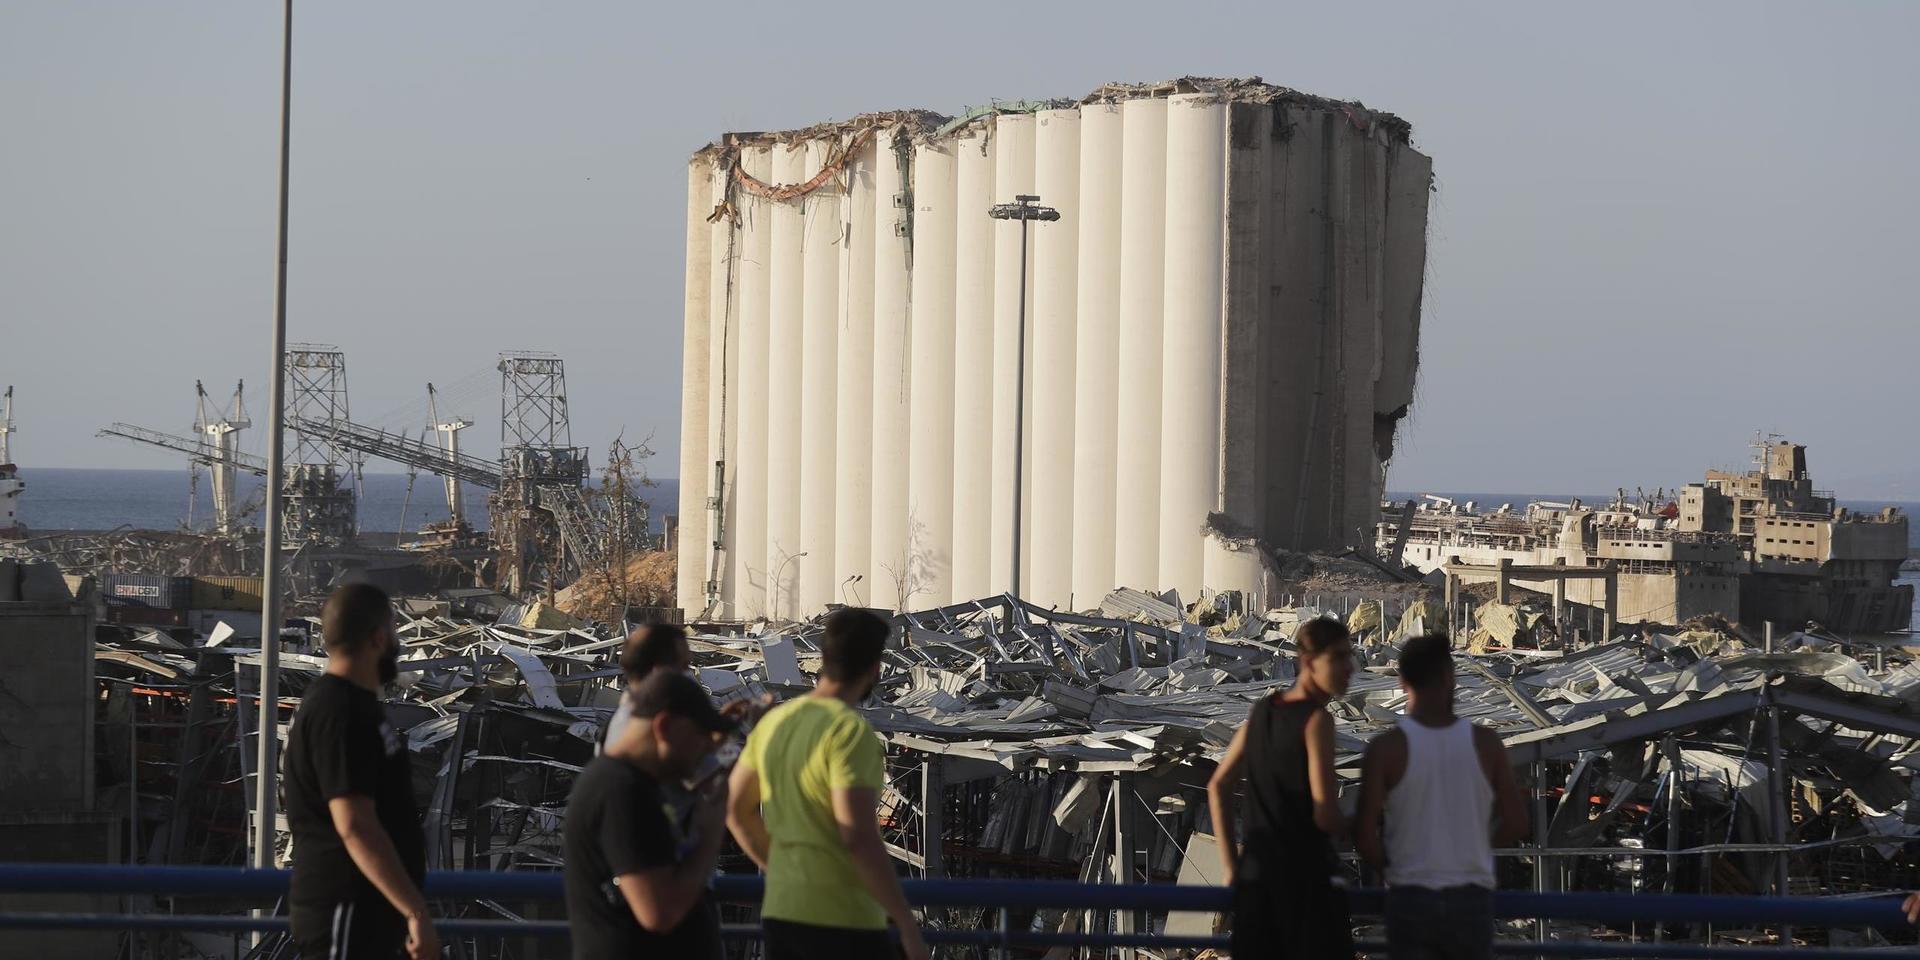 Ammoniumnitratet som orsakade explosionen ska ha förvarats i Beiruts hamn sedan 2014.